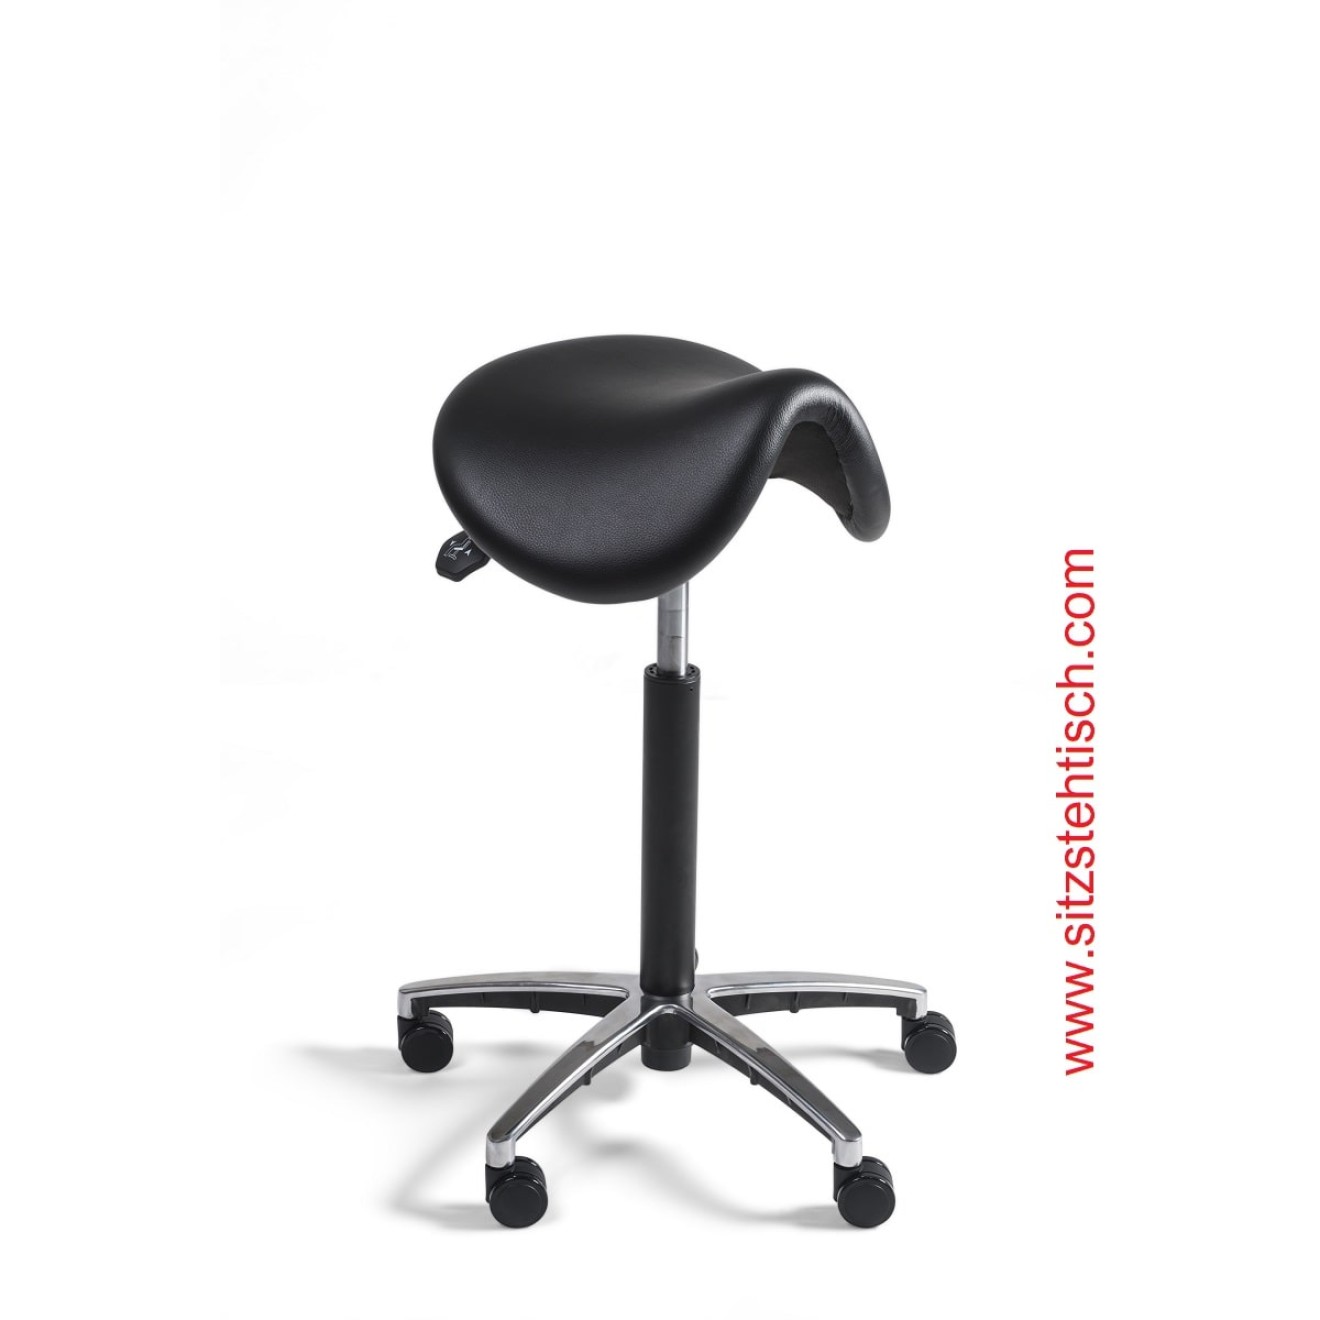 Sattelhocker mit normalen Sitz - Sitzhöhen- und Sitzwinkelverstellung - Bezug Kunstleder schwarz - Belastbarkeit bis 125 kg - 5 Jahre Garantie - 101269 - Global Stole A/S